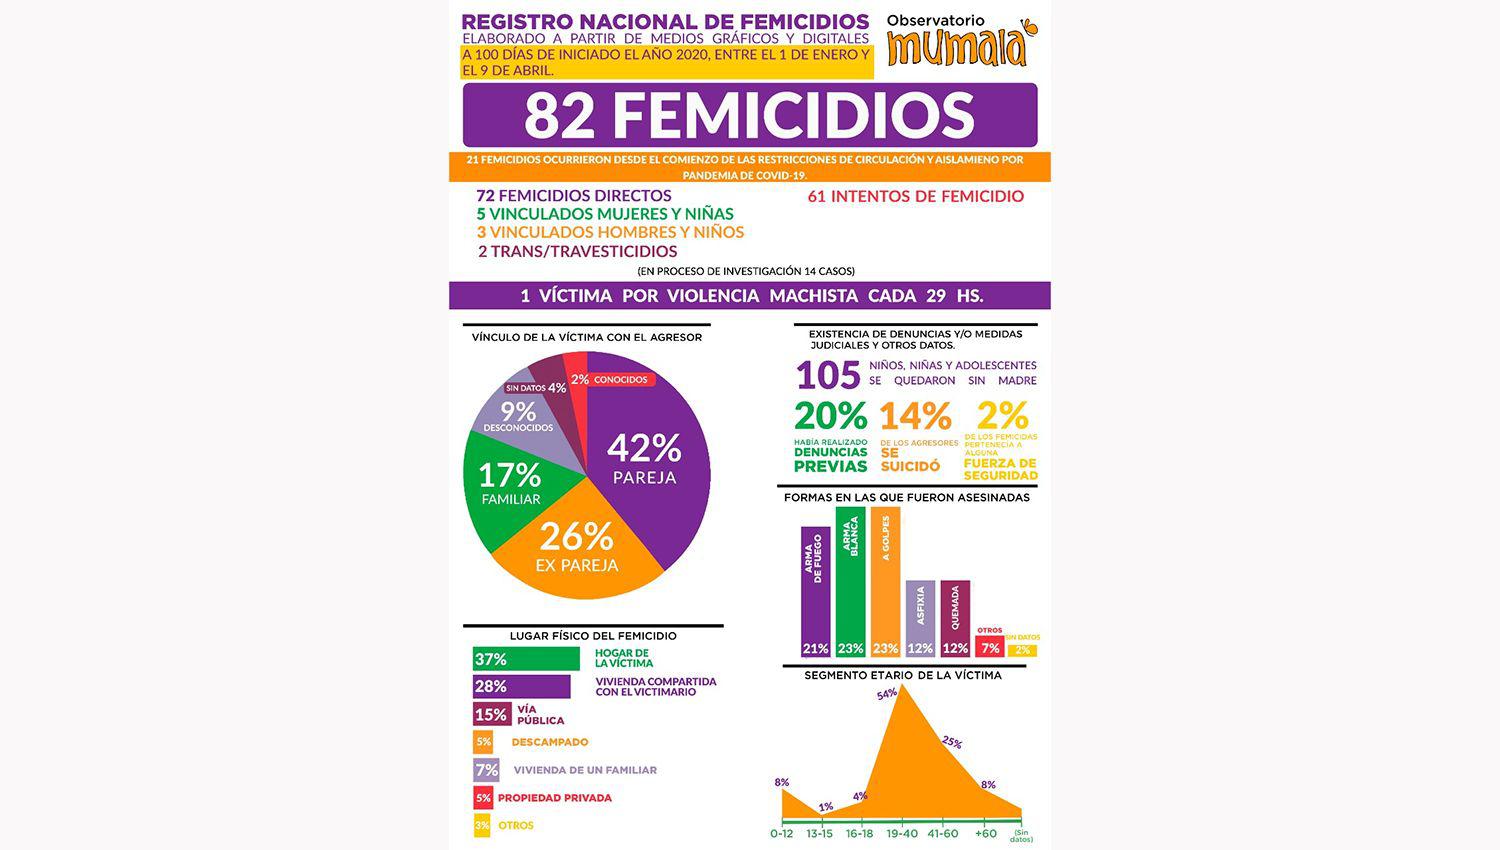 Se cometieron en Argentina 96 femicidios en los primeros 100 diacuteas del 2020